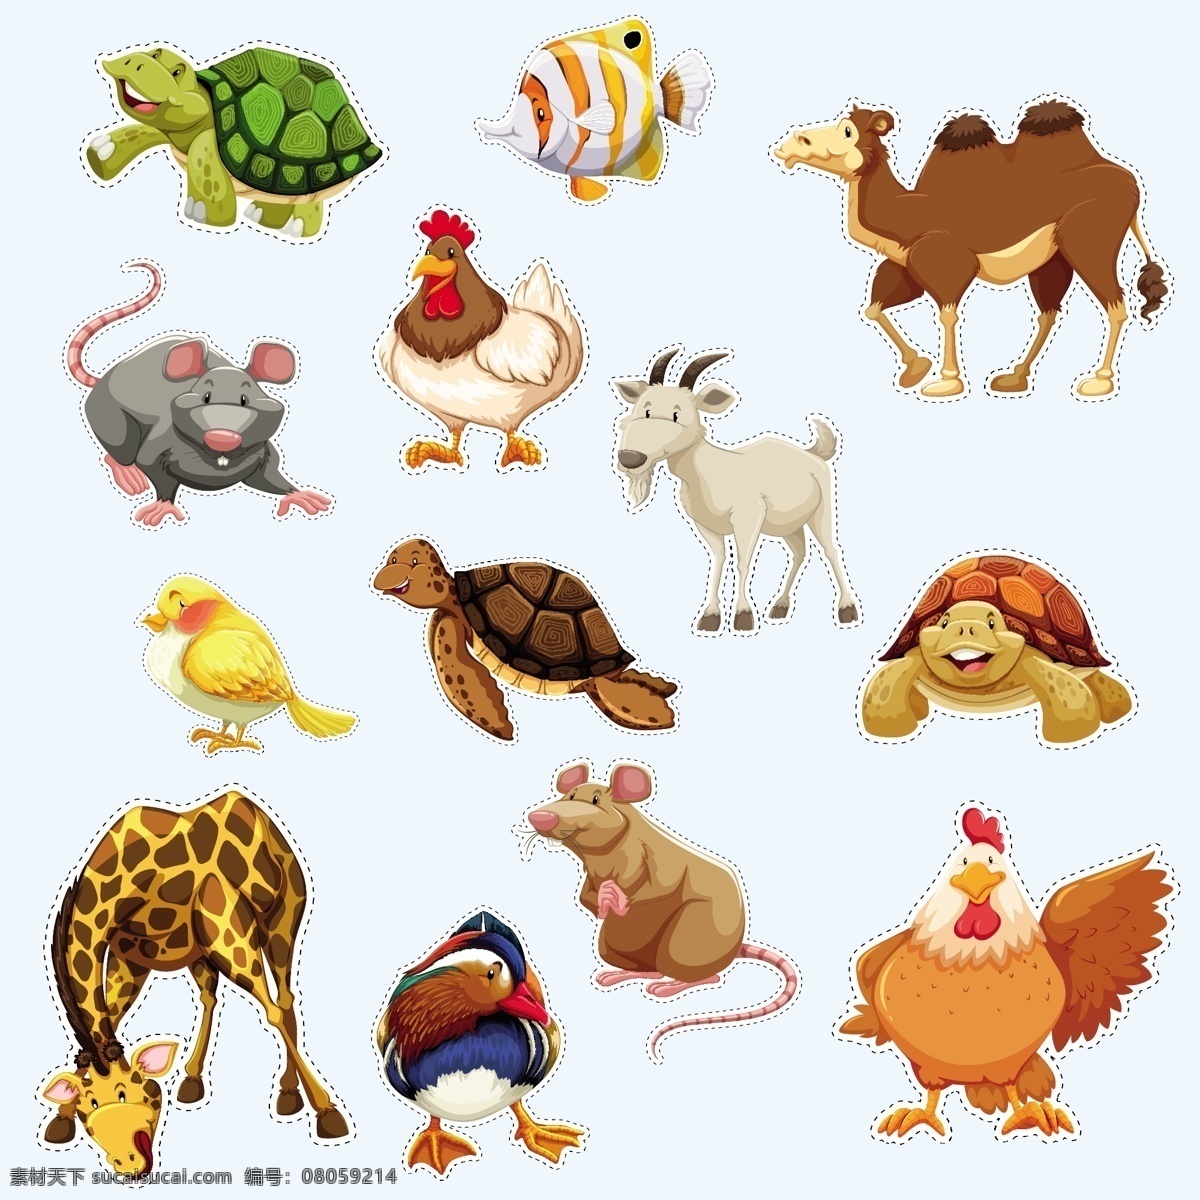 卡通野生动物 动物 动物素材 野生动物 动物园 卡通动物生物 卡通设计